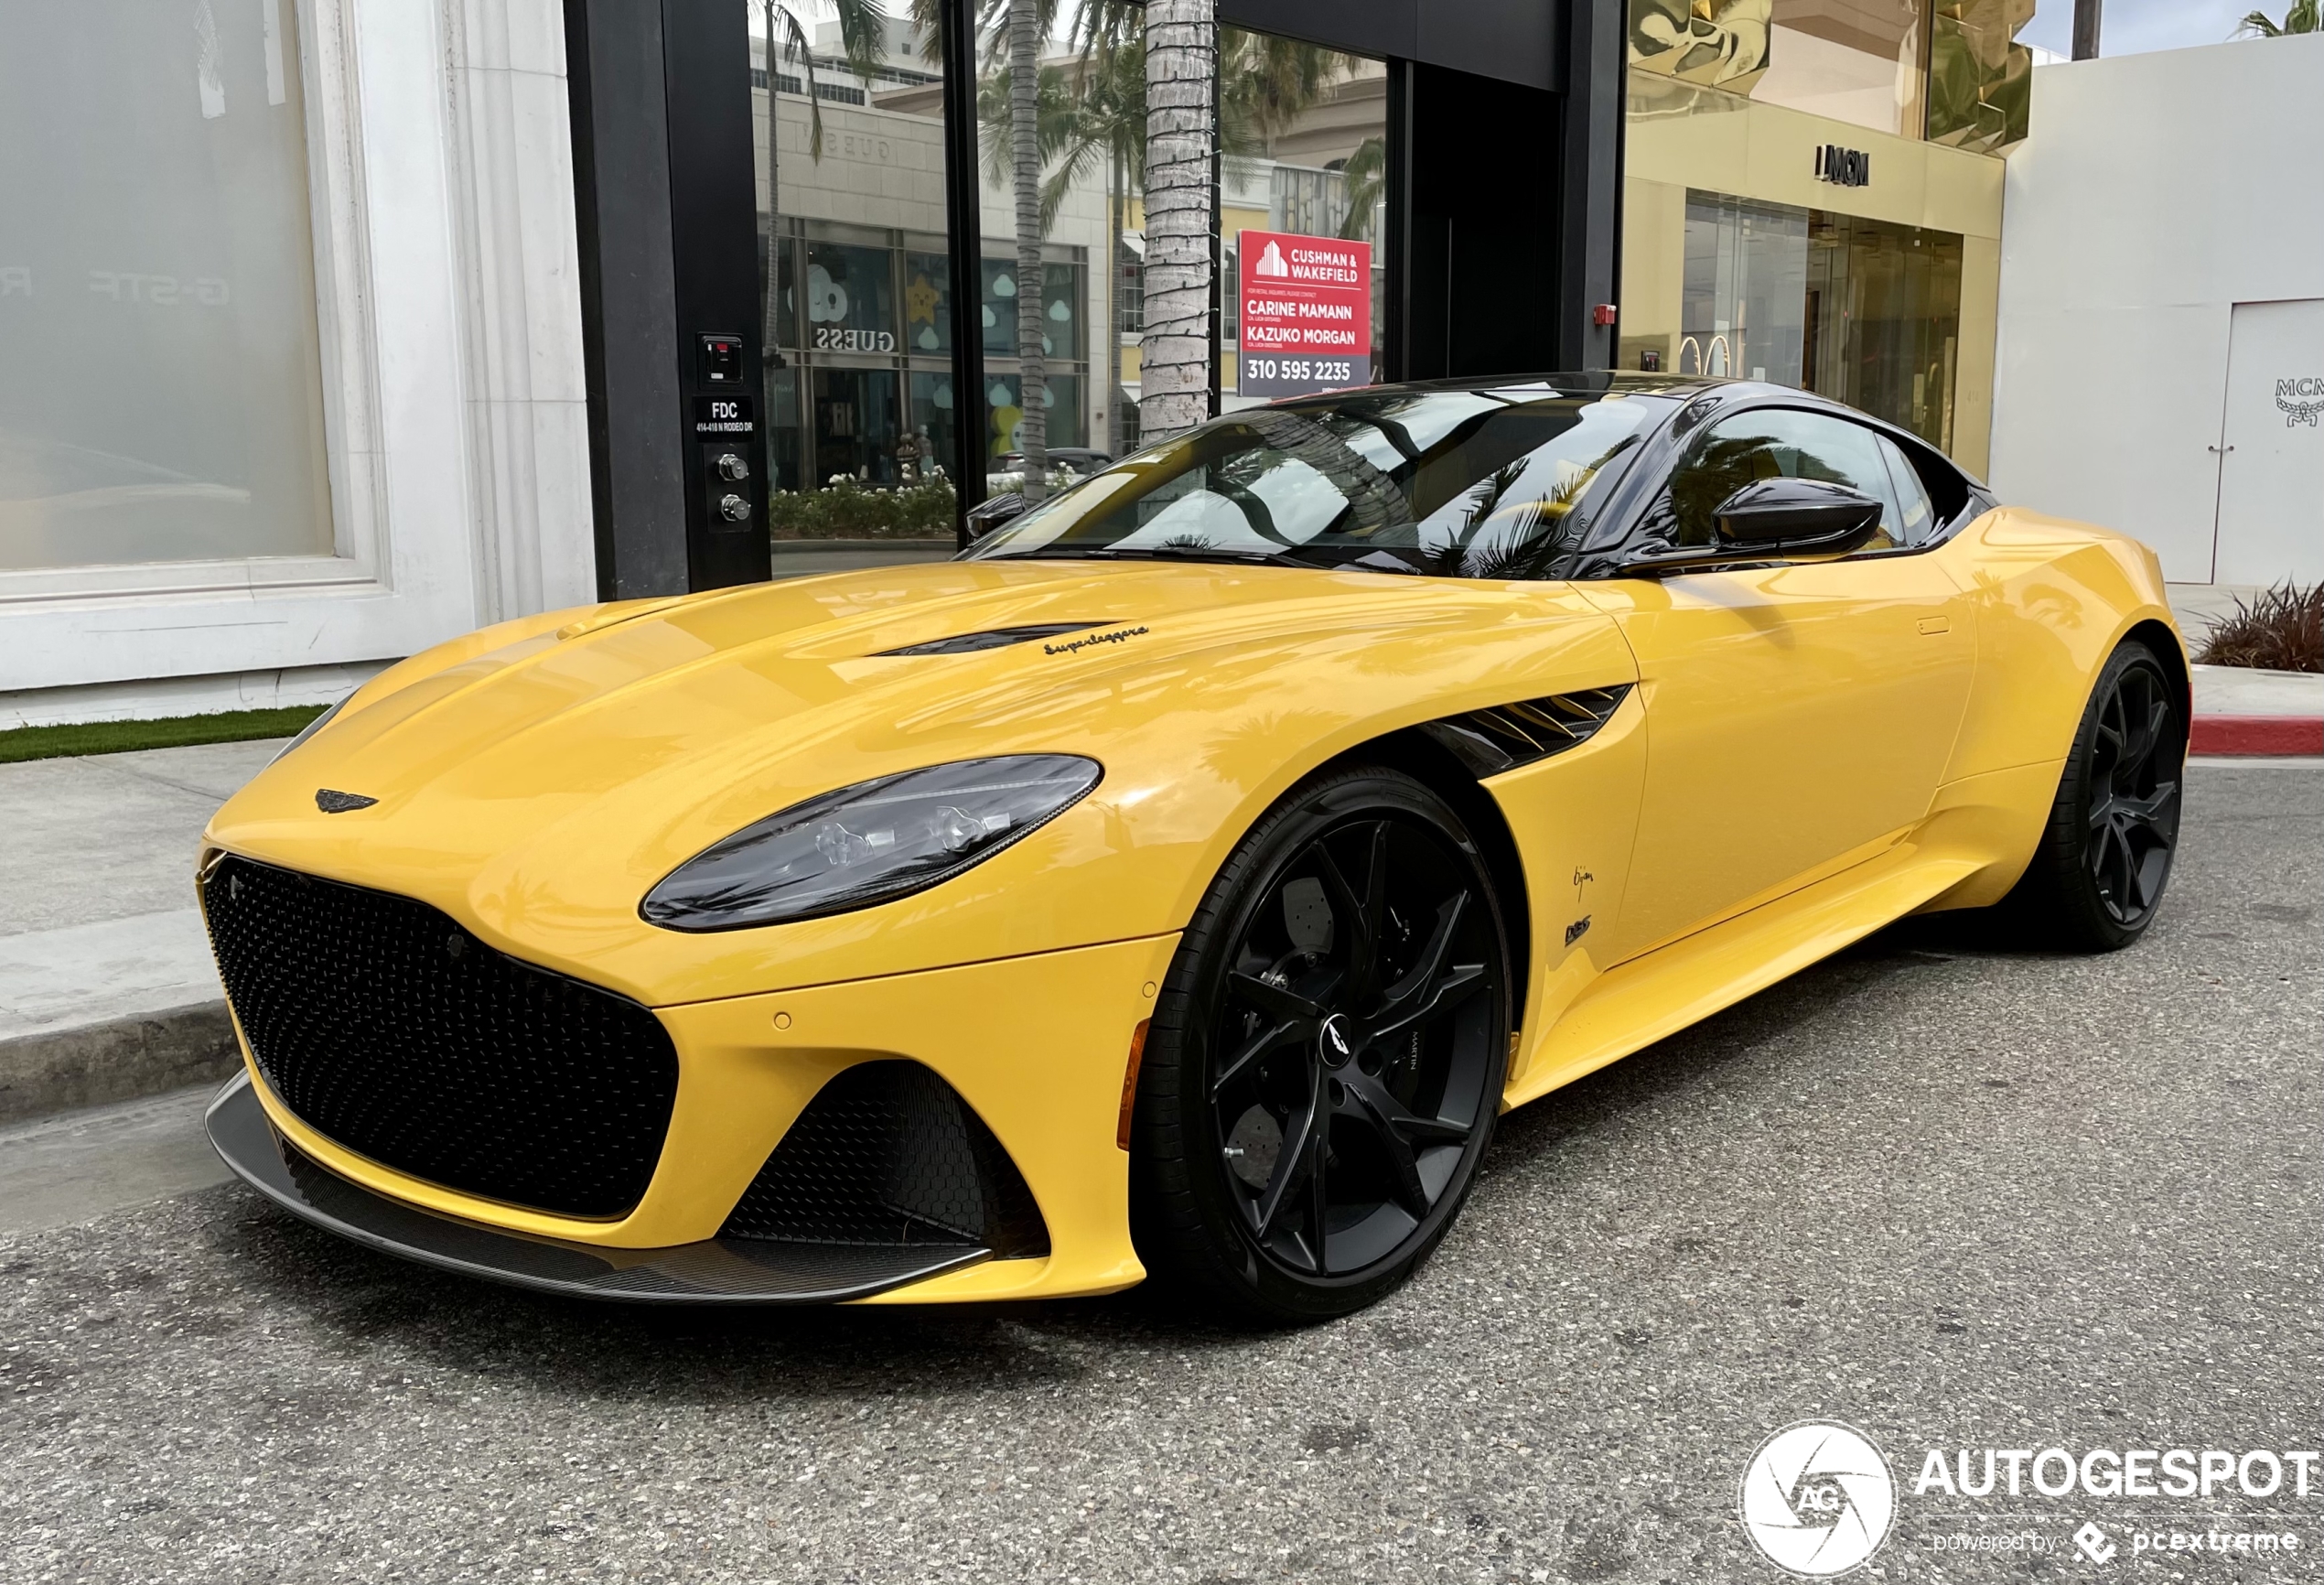 Aston Martin laat zien dat een geel met zwarte combinatie nog altijd top is